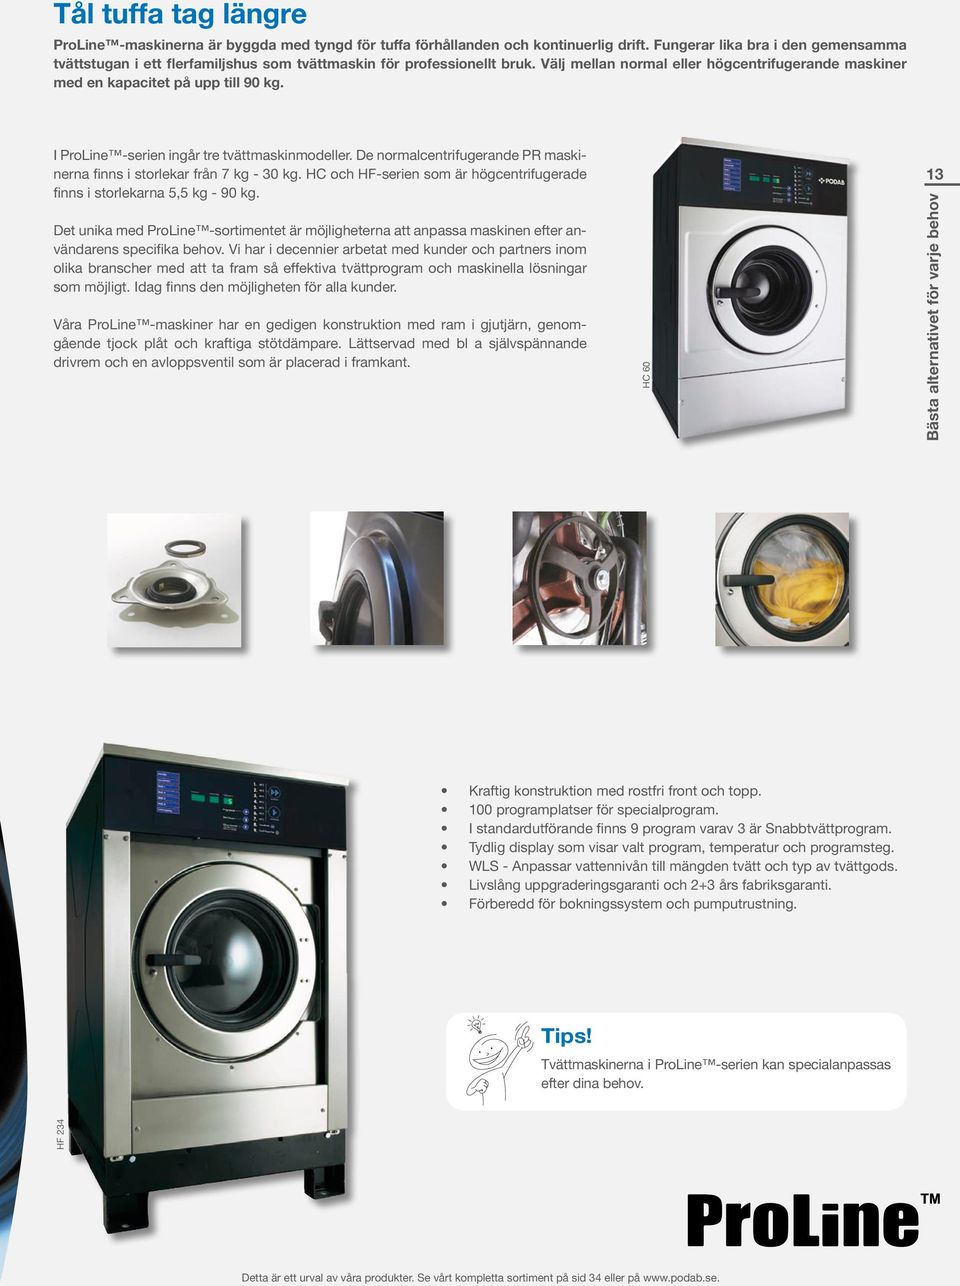 I ProLine -serien ingår tre tvättmaskinmodeller. De normalcentrifugerande PR maskinerna finns i storlekar från 7 kg - 30 kg.